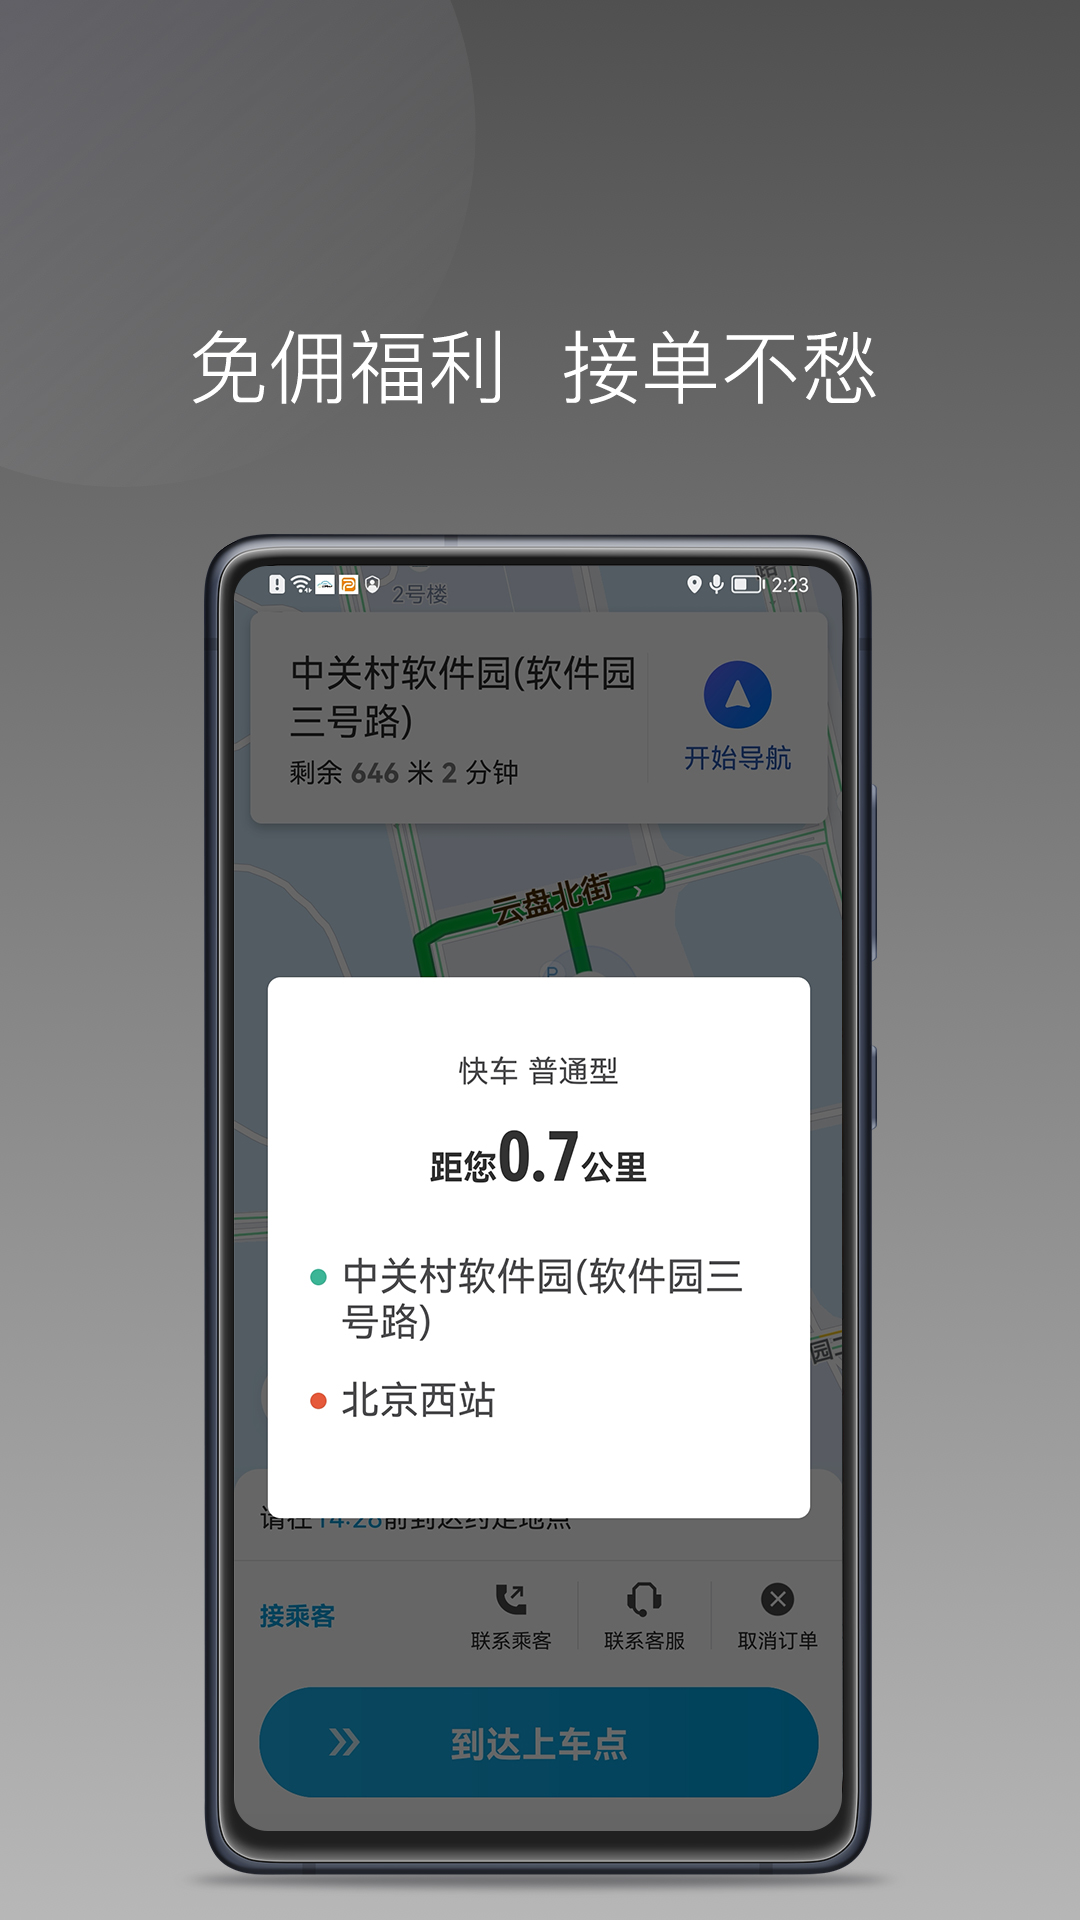 益民出行司机端1.7.0版本app下载老版本图2: